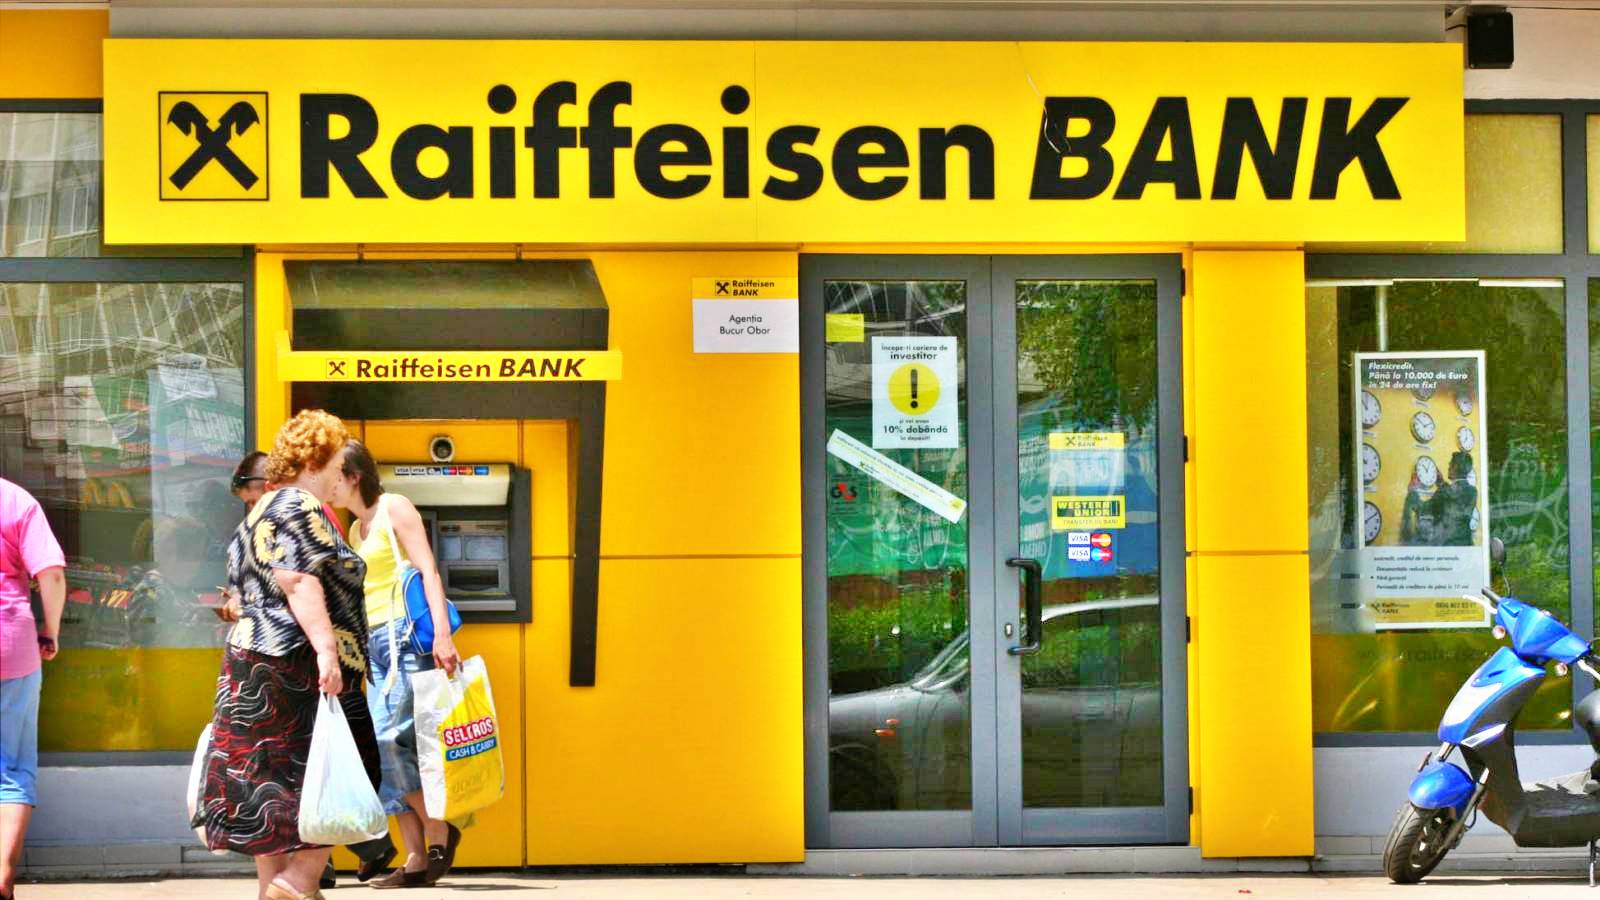 Ankündigung der Raiffeisen Bank WICHTIGE Entscheidung für rumänische Kunden